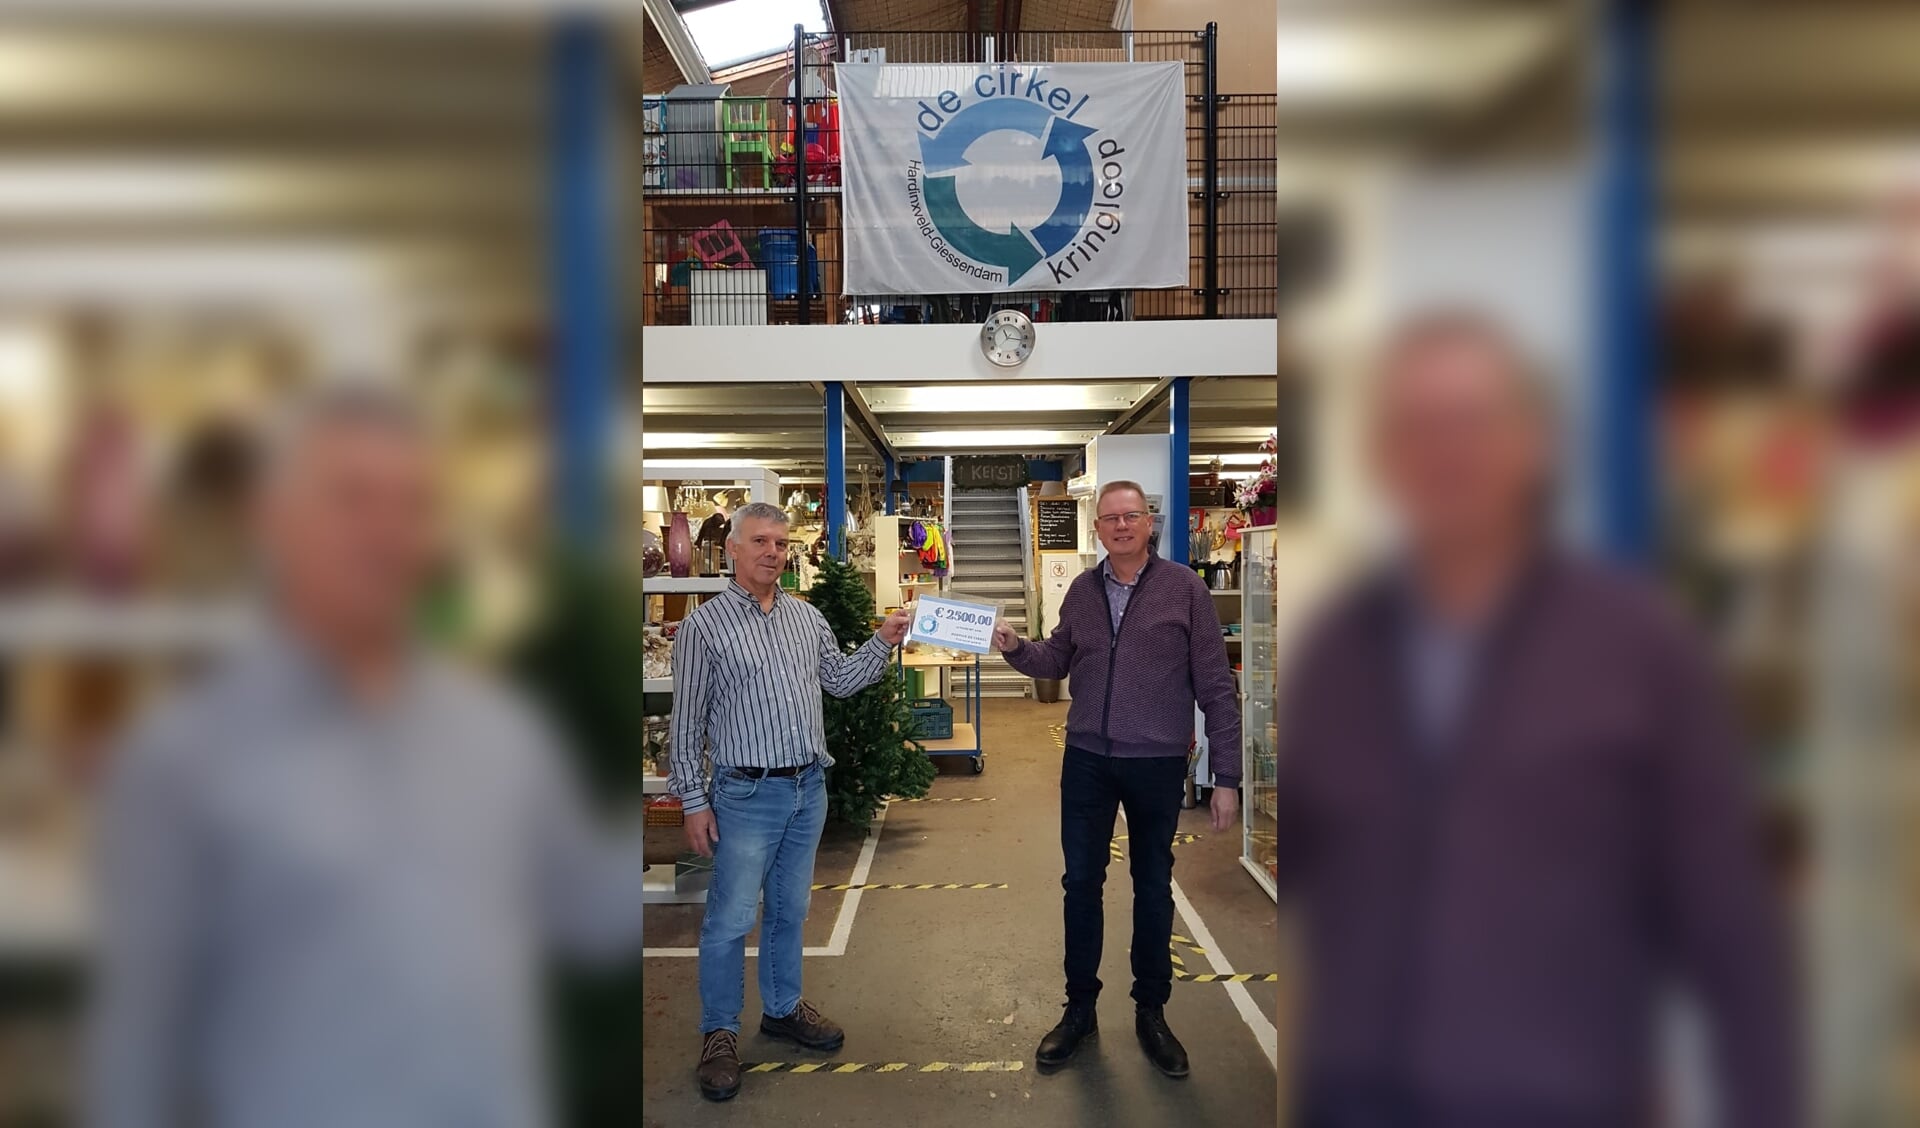 Uit handen van Jan de Rooij, voorzitter kringloop De Cirkel, ontvangt Nico van der Veen, Stichting vrienden van hospice De Cirkel, een cheque van 2.500 euro.